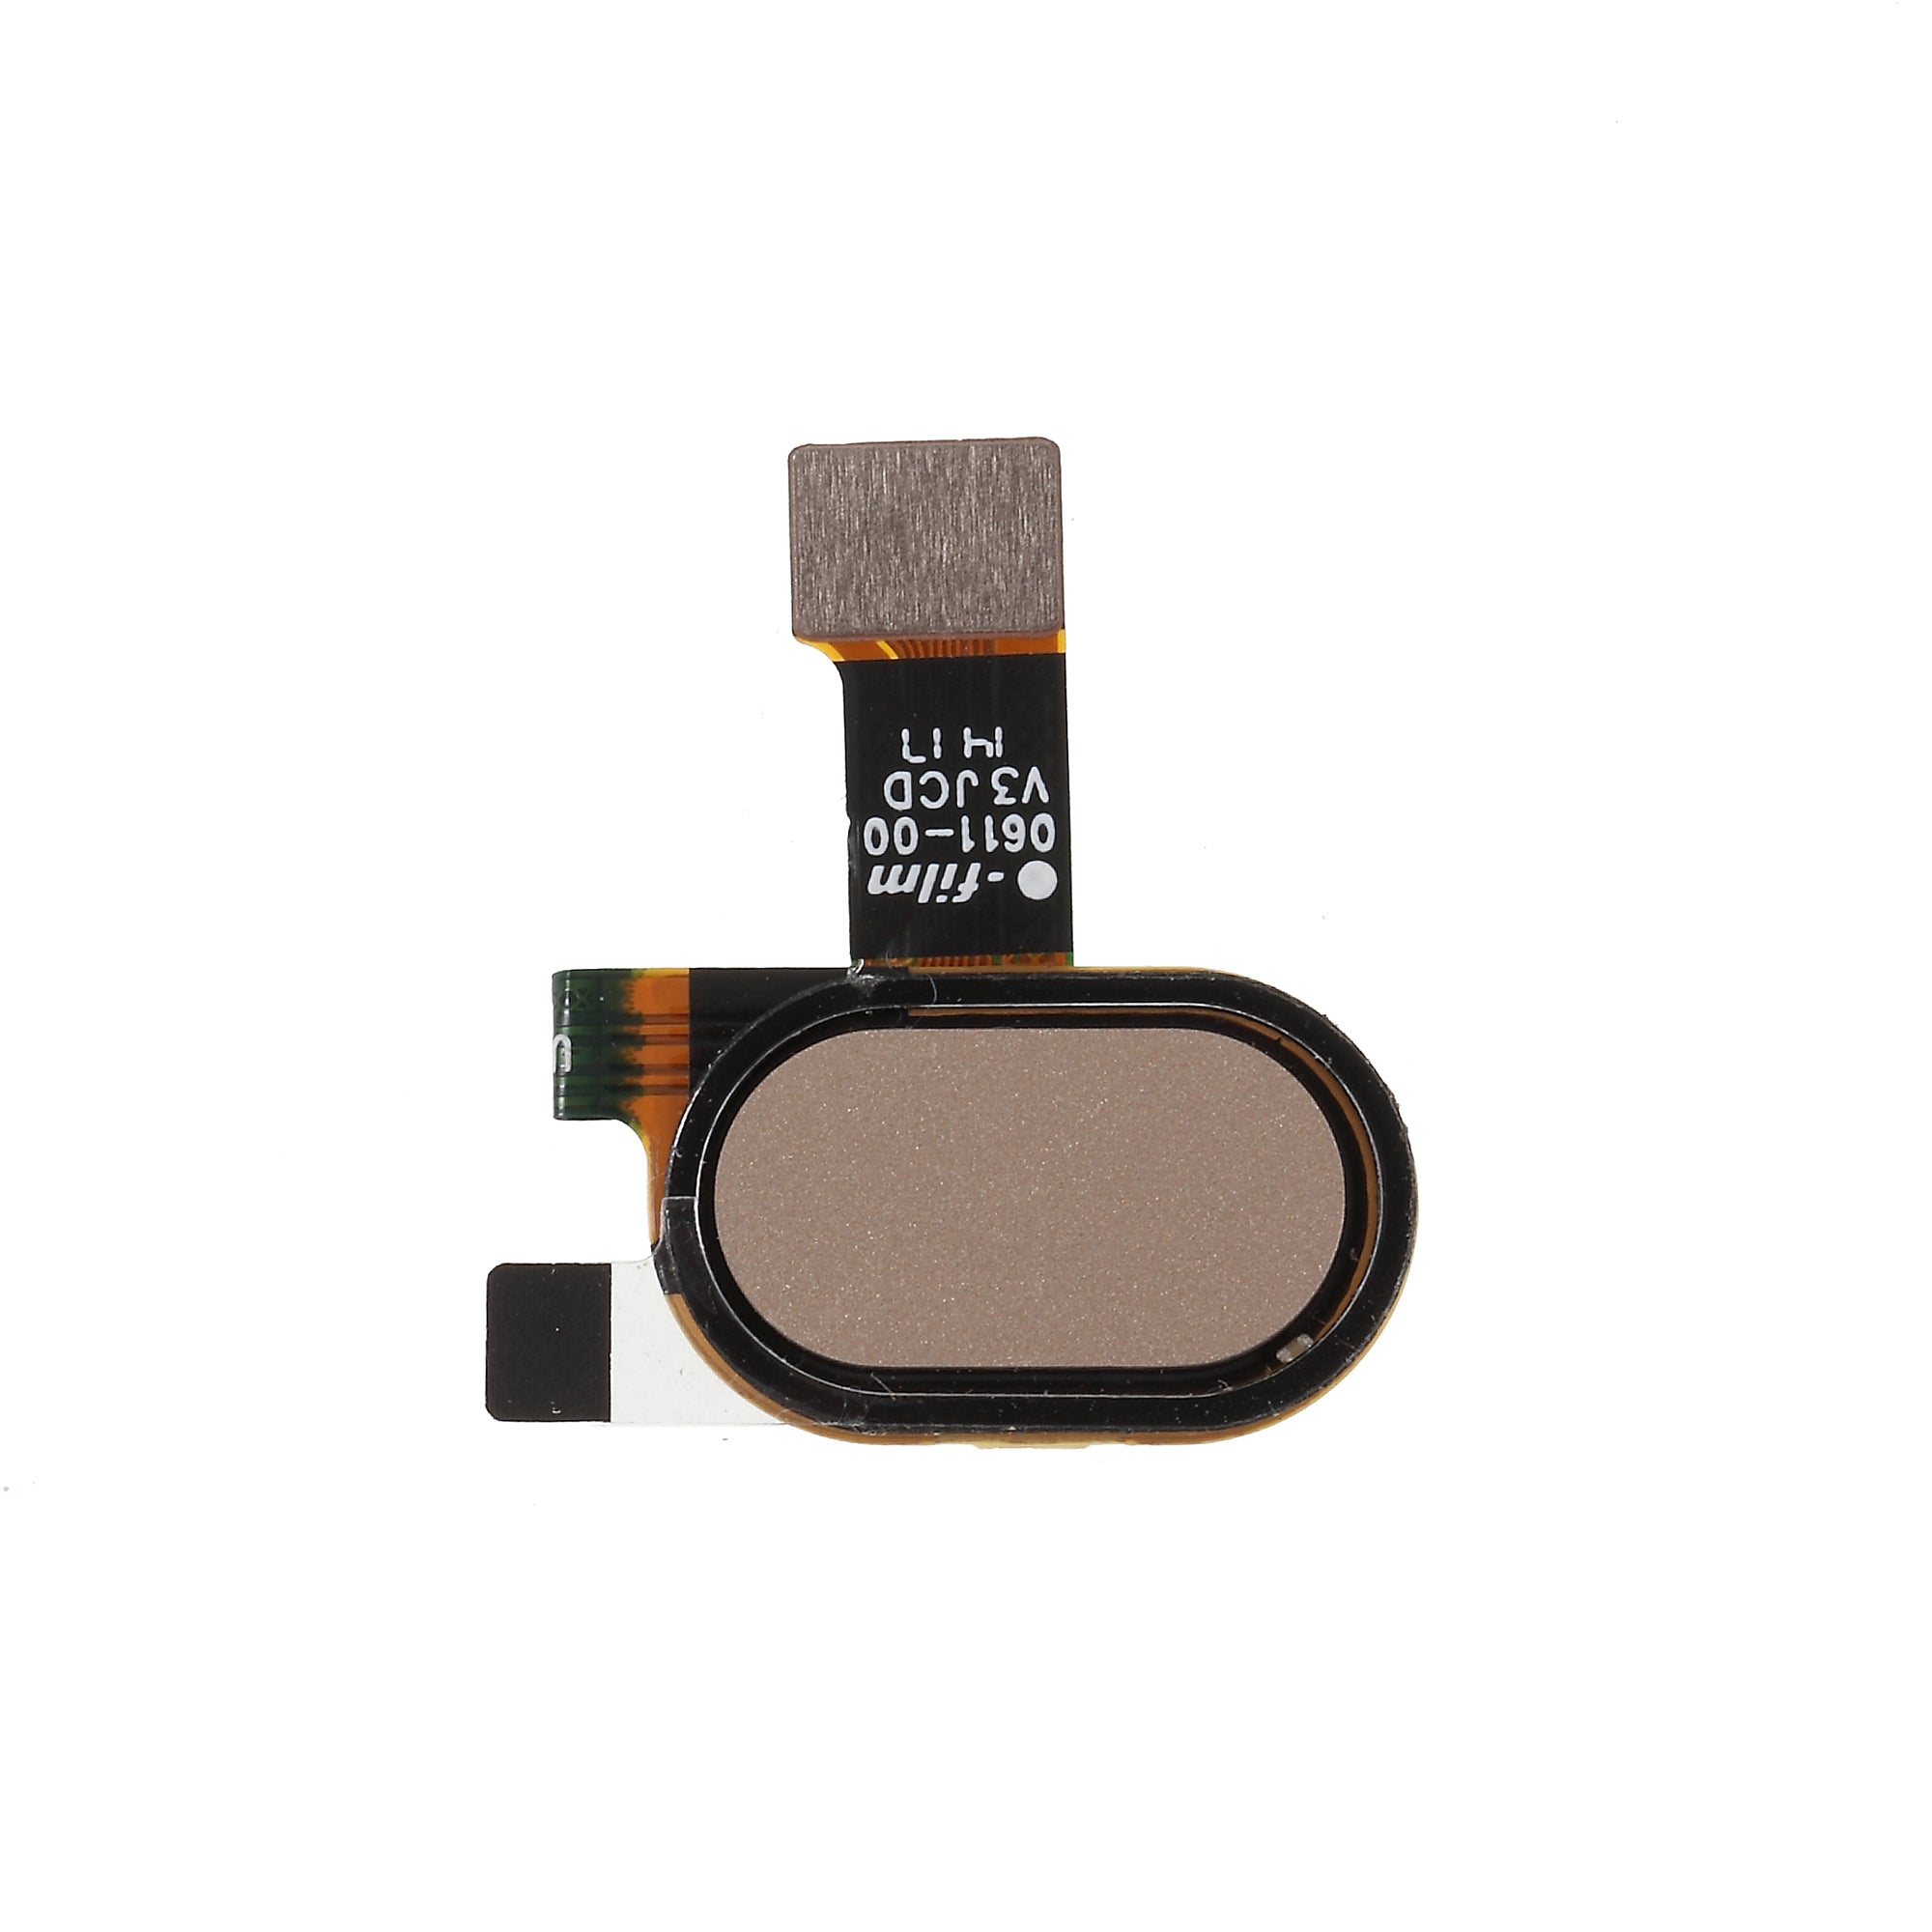 OEM Home Key Fingerprint Button Flex Cable Part Replacement for Motorola Moto E4 - Gold